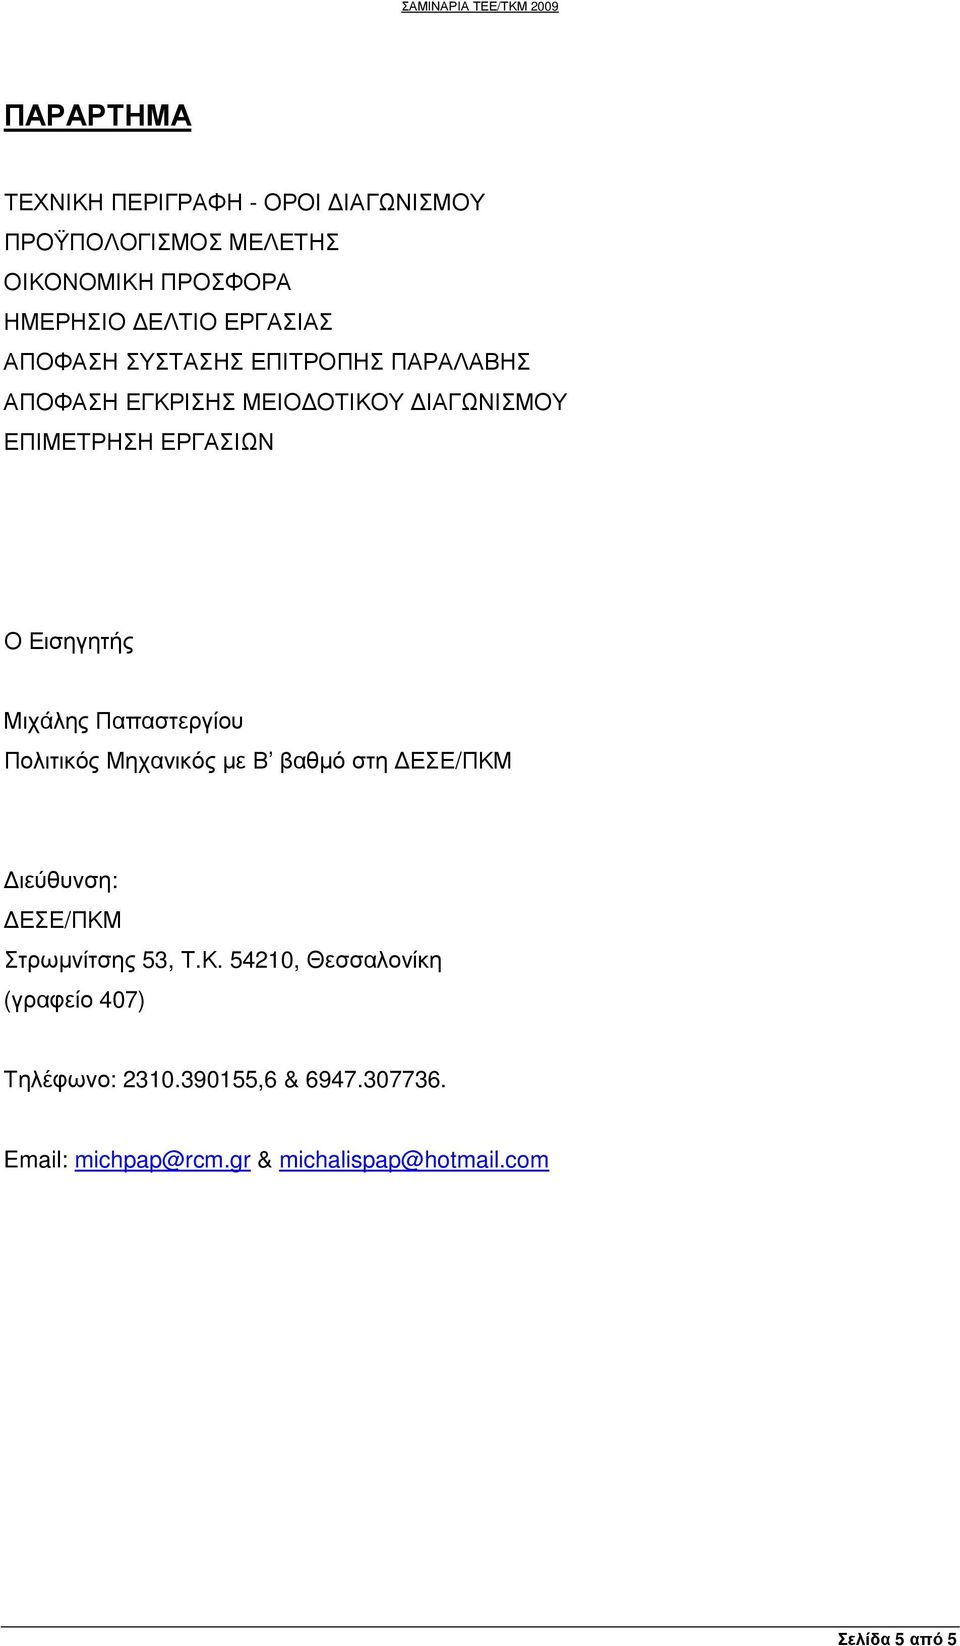 Μιχάλης Παπαστεργίου Πολιτικός Μηχανικός µε Β βαθµό στη ΕΣΕ/ΠΚΜ ιεύθυνση: ΕΣΕ/ΠΚΜ Στρωµνίτσης 53, Τ.Κ. 54210, Θεσσαλονίκη (γραφείο 407) Τηλέφωνο: 2310.